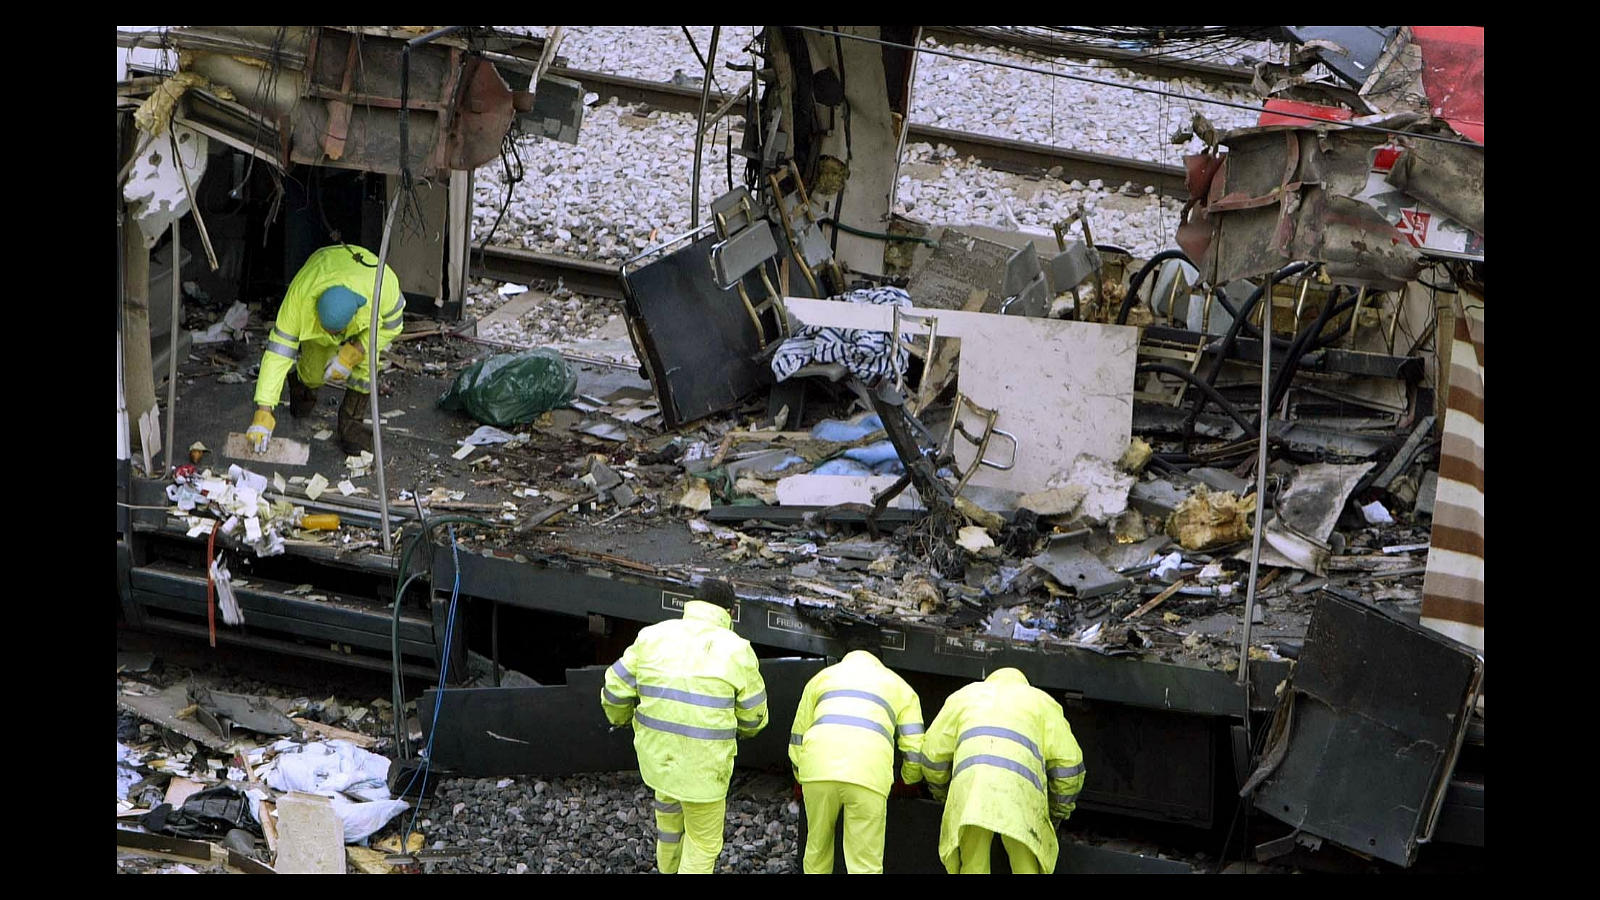 El 11 de marzo de 2004, 191 personas murieron y 2.000 resultaron heridas por la explosión de una decena de bombas en cuatro trenes en Madrid y sus suburbios. El atentado reivindicado en nombre de Al Qaida por una célula islamista radical es el más mortífero de Europa occidental después del que destruyó un avión en Lockerbie (Escocia) en 1988, en el que murieron 270 personas